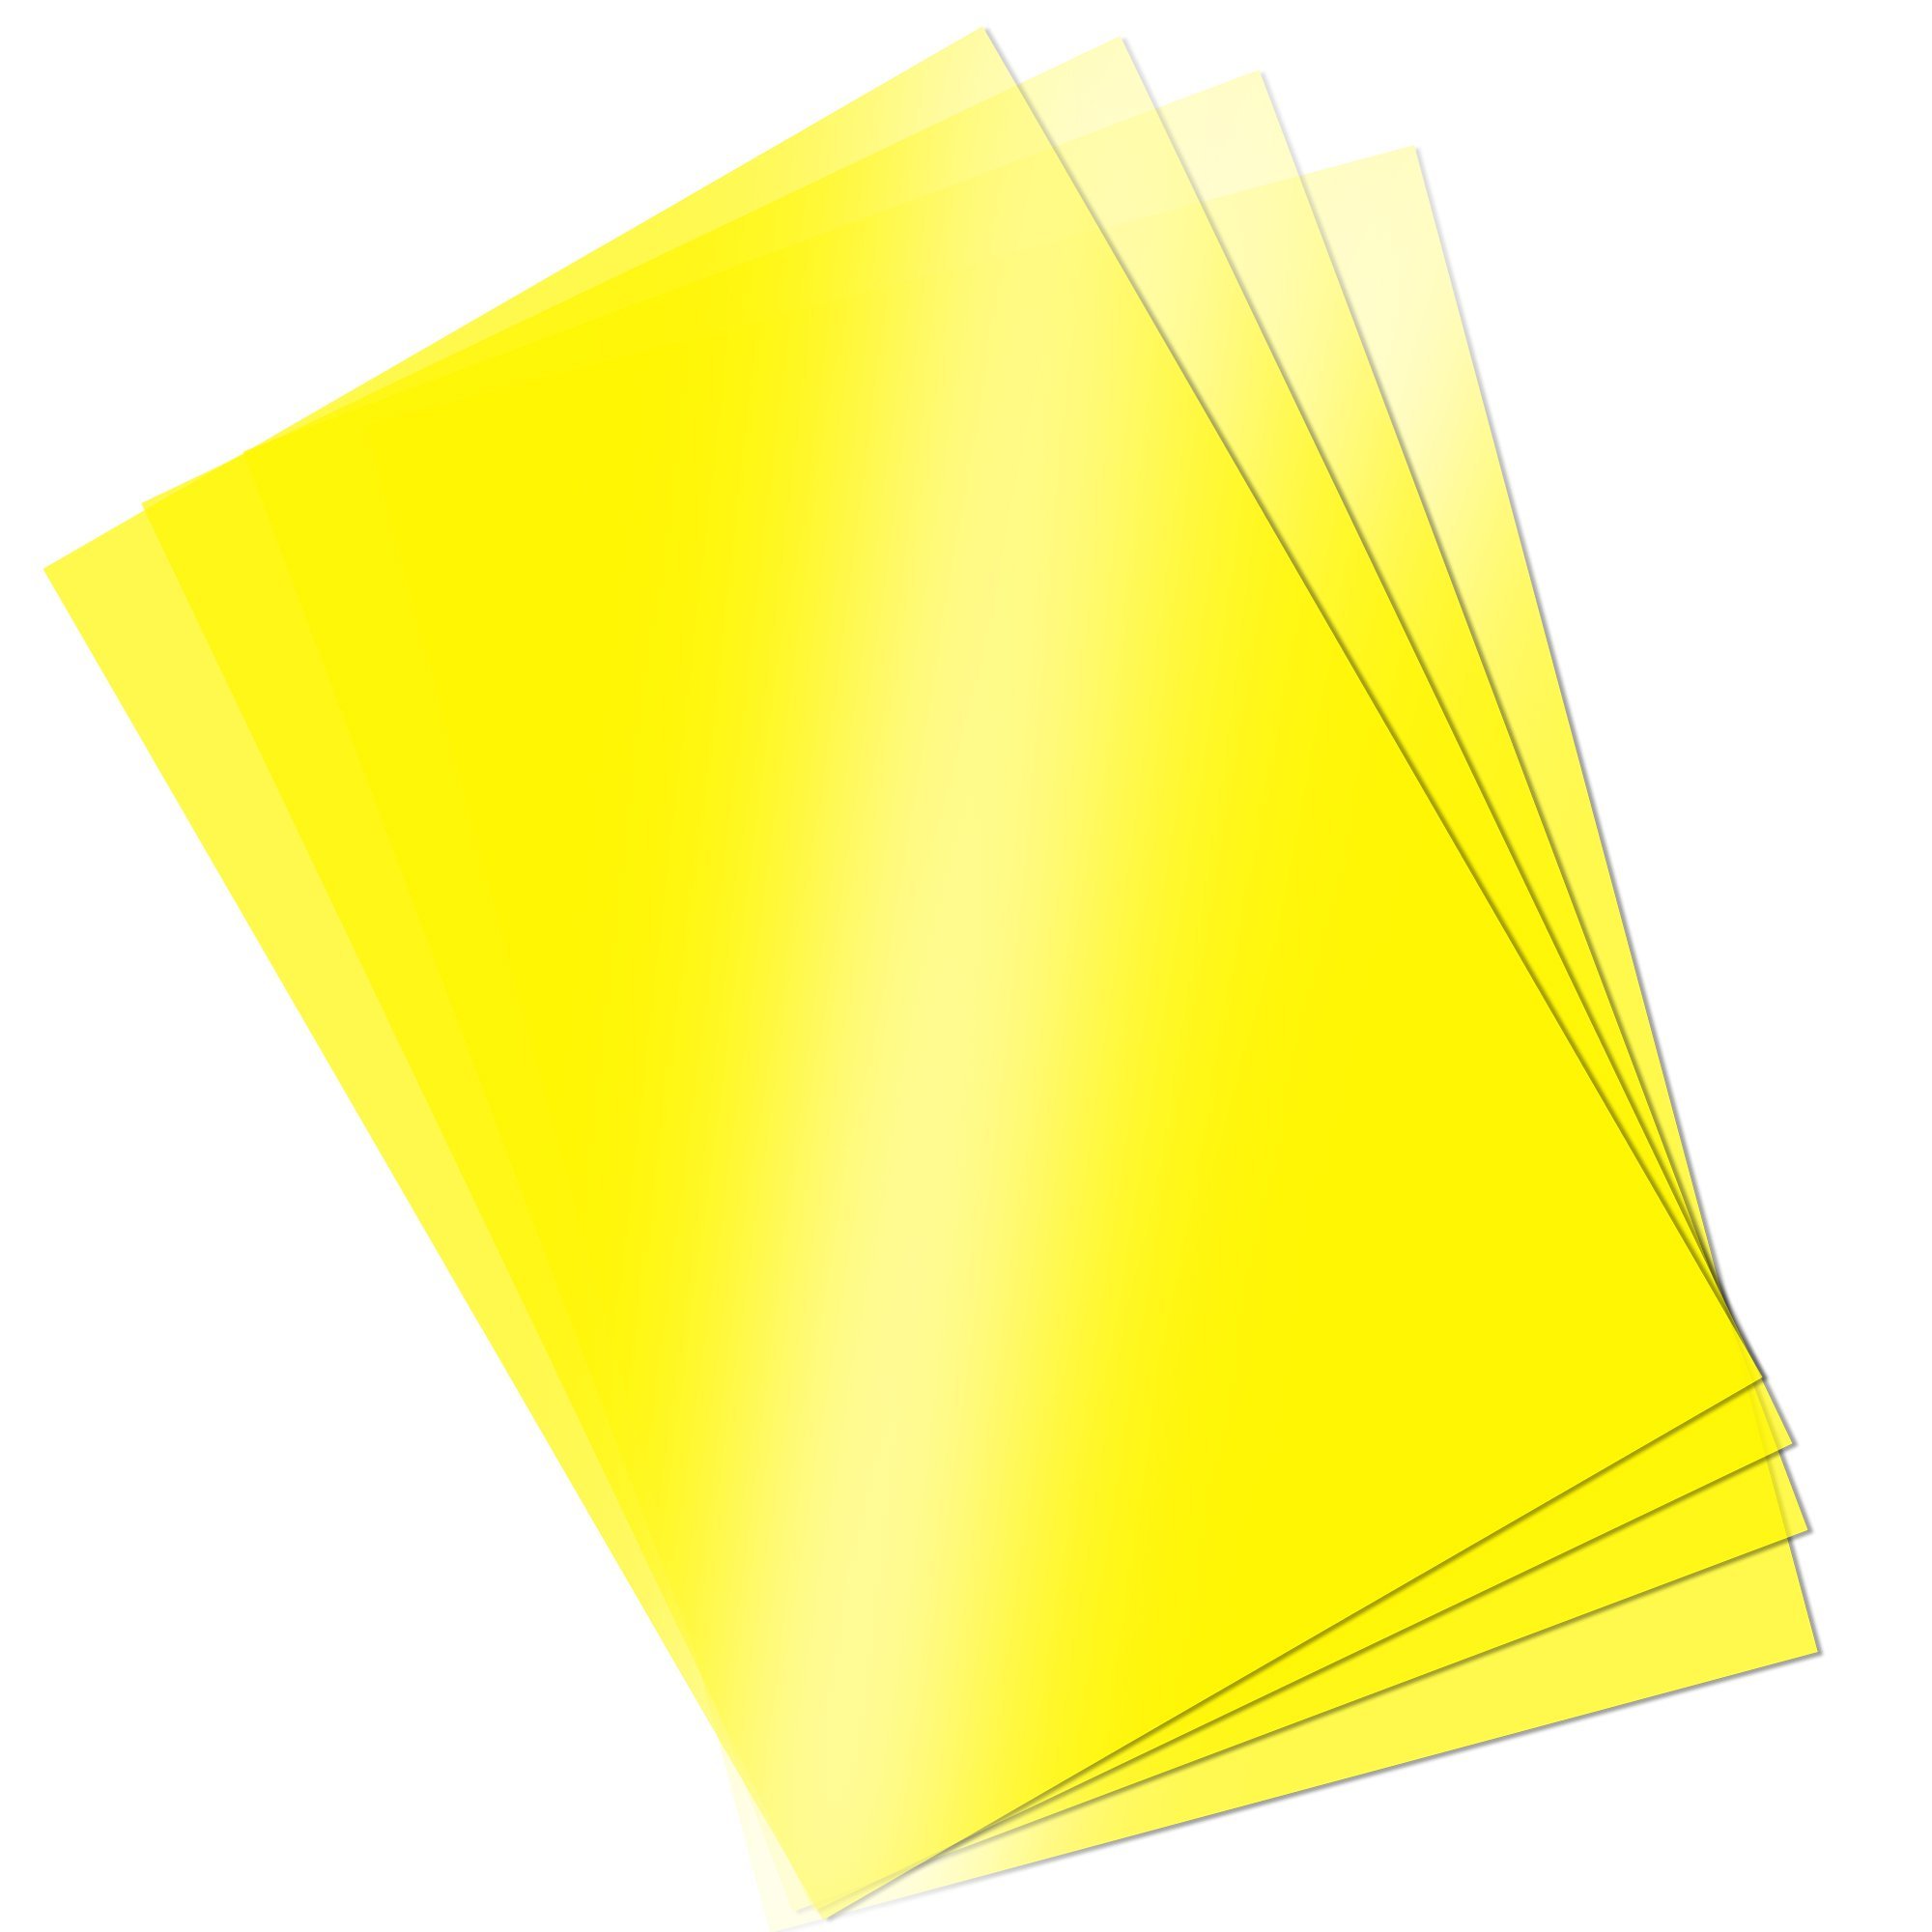 Asetat Kağıdı Şeffaf Sarı 250 Mikron A4 İnce 3lü